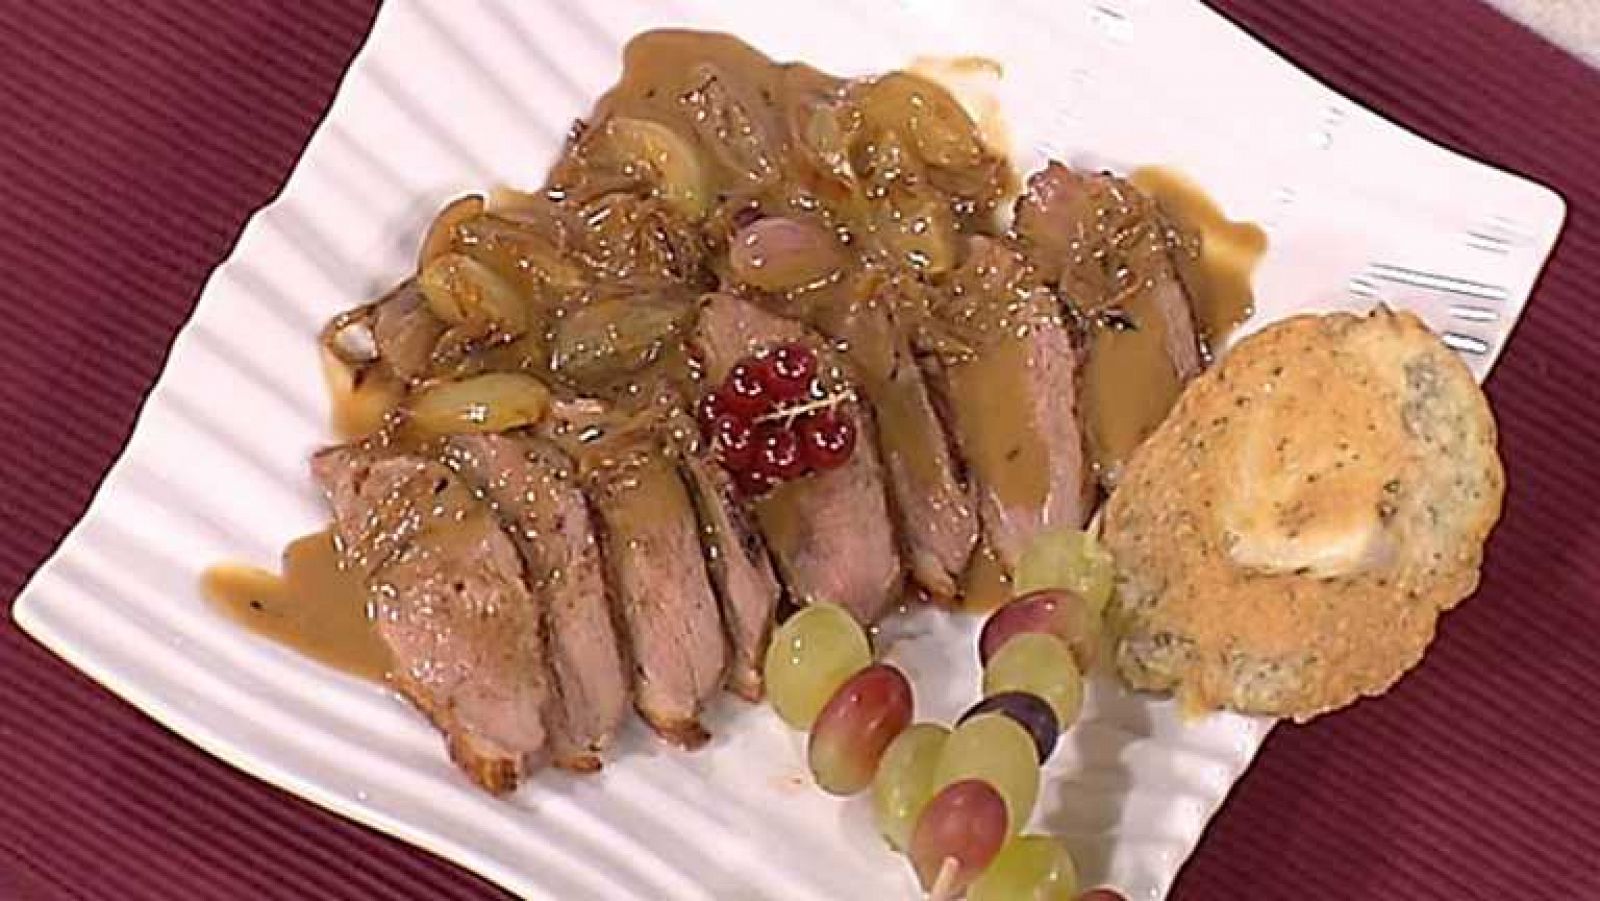 Cocina con Sergio - Magret de pato con crema de uvas